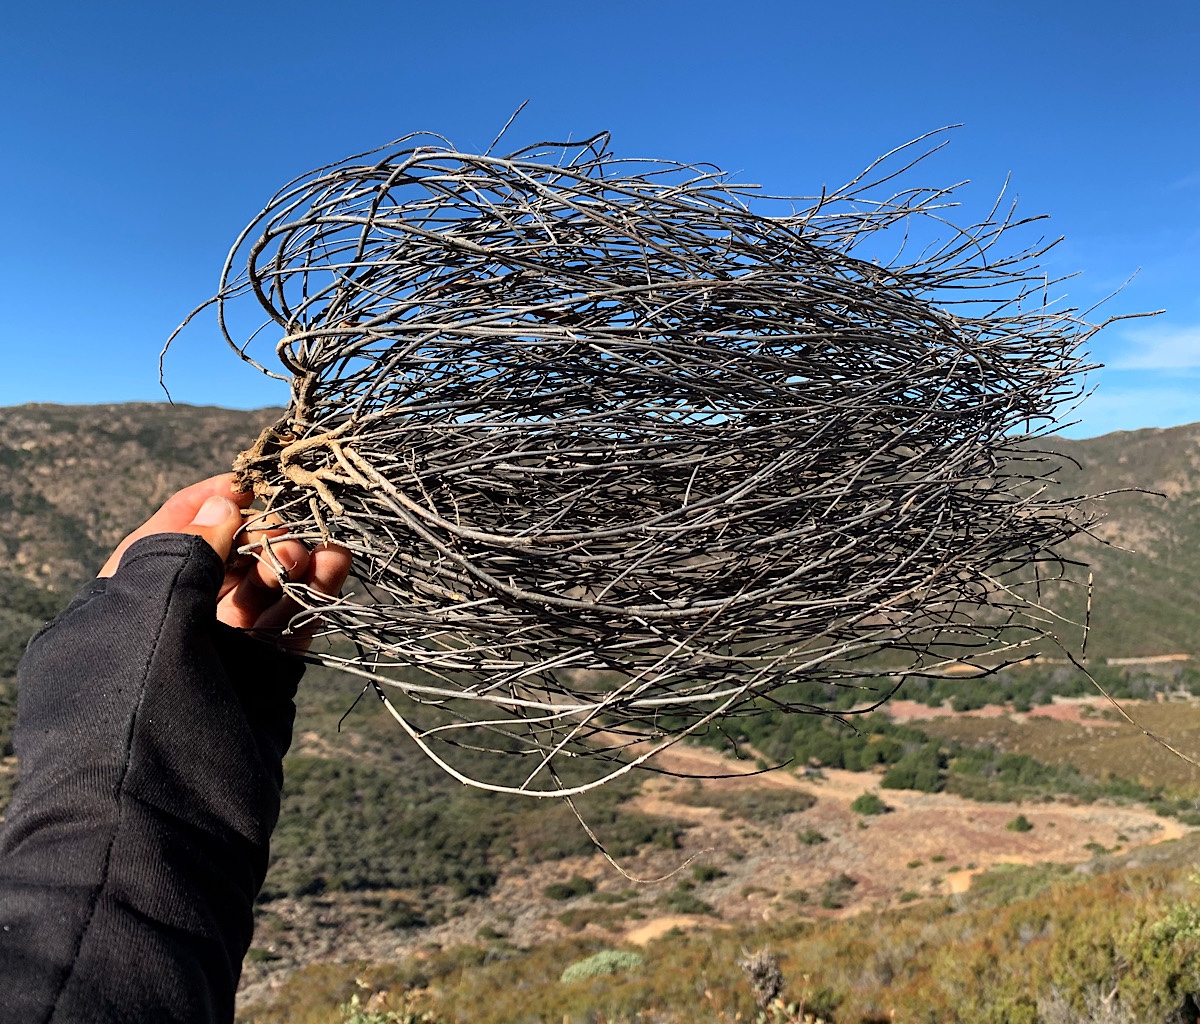 Dried tumbleweeds look like hair blowing in the wind. 